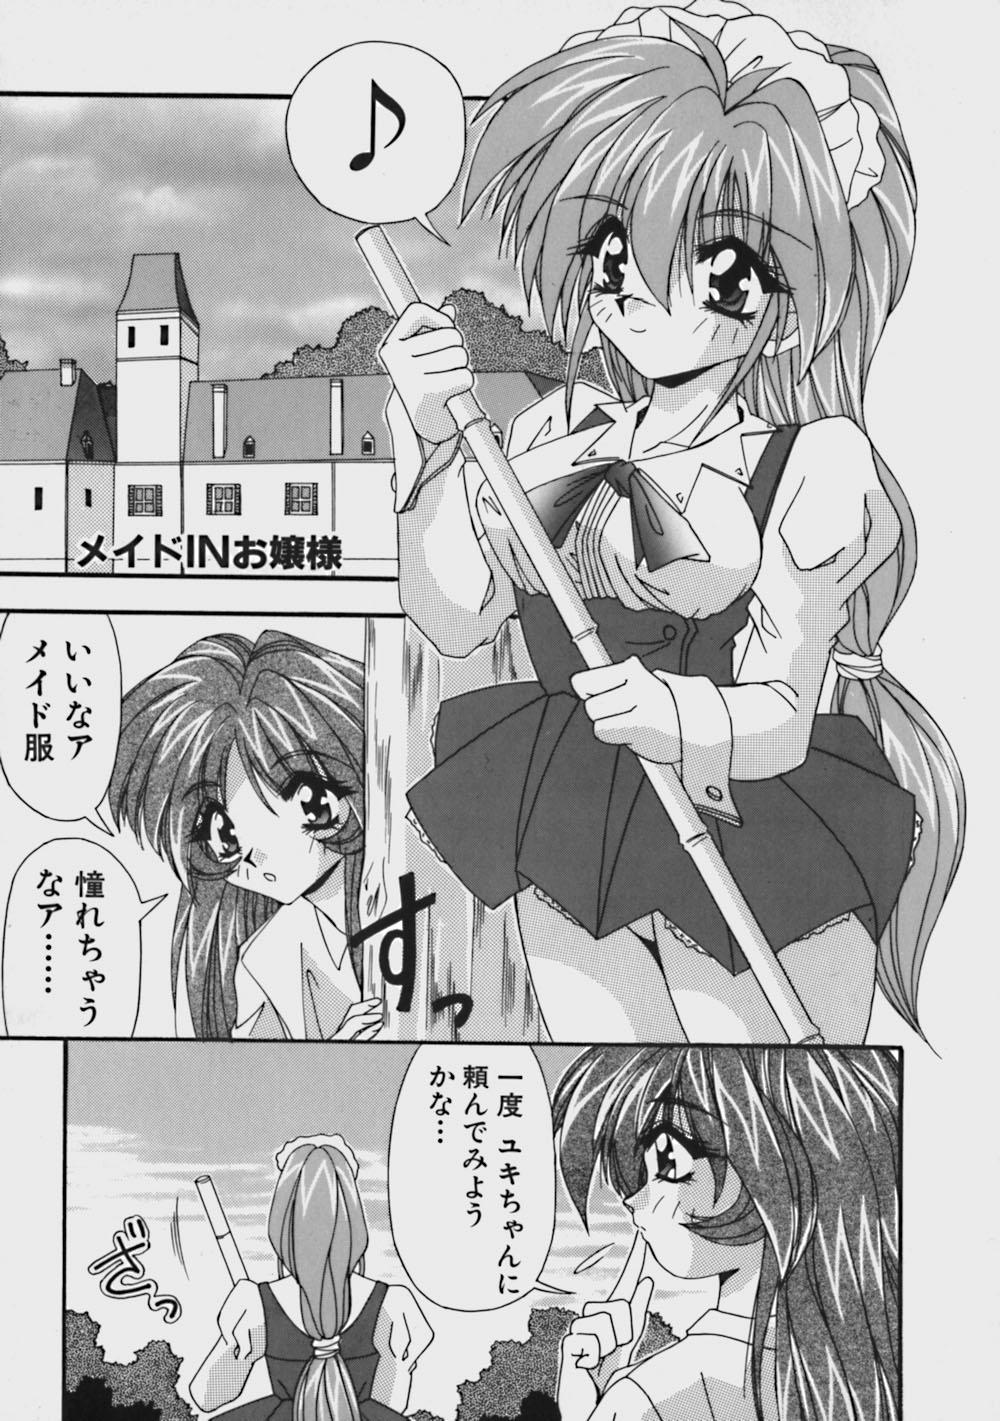 Cumfacial Kimama ni Peach Girl - Selfish Peach Girl Threesome - Page 8